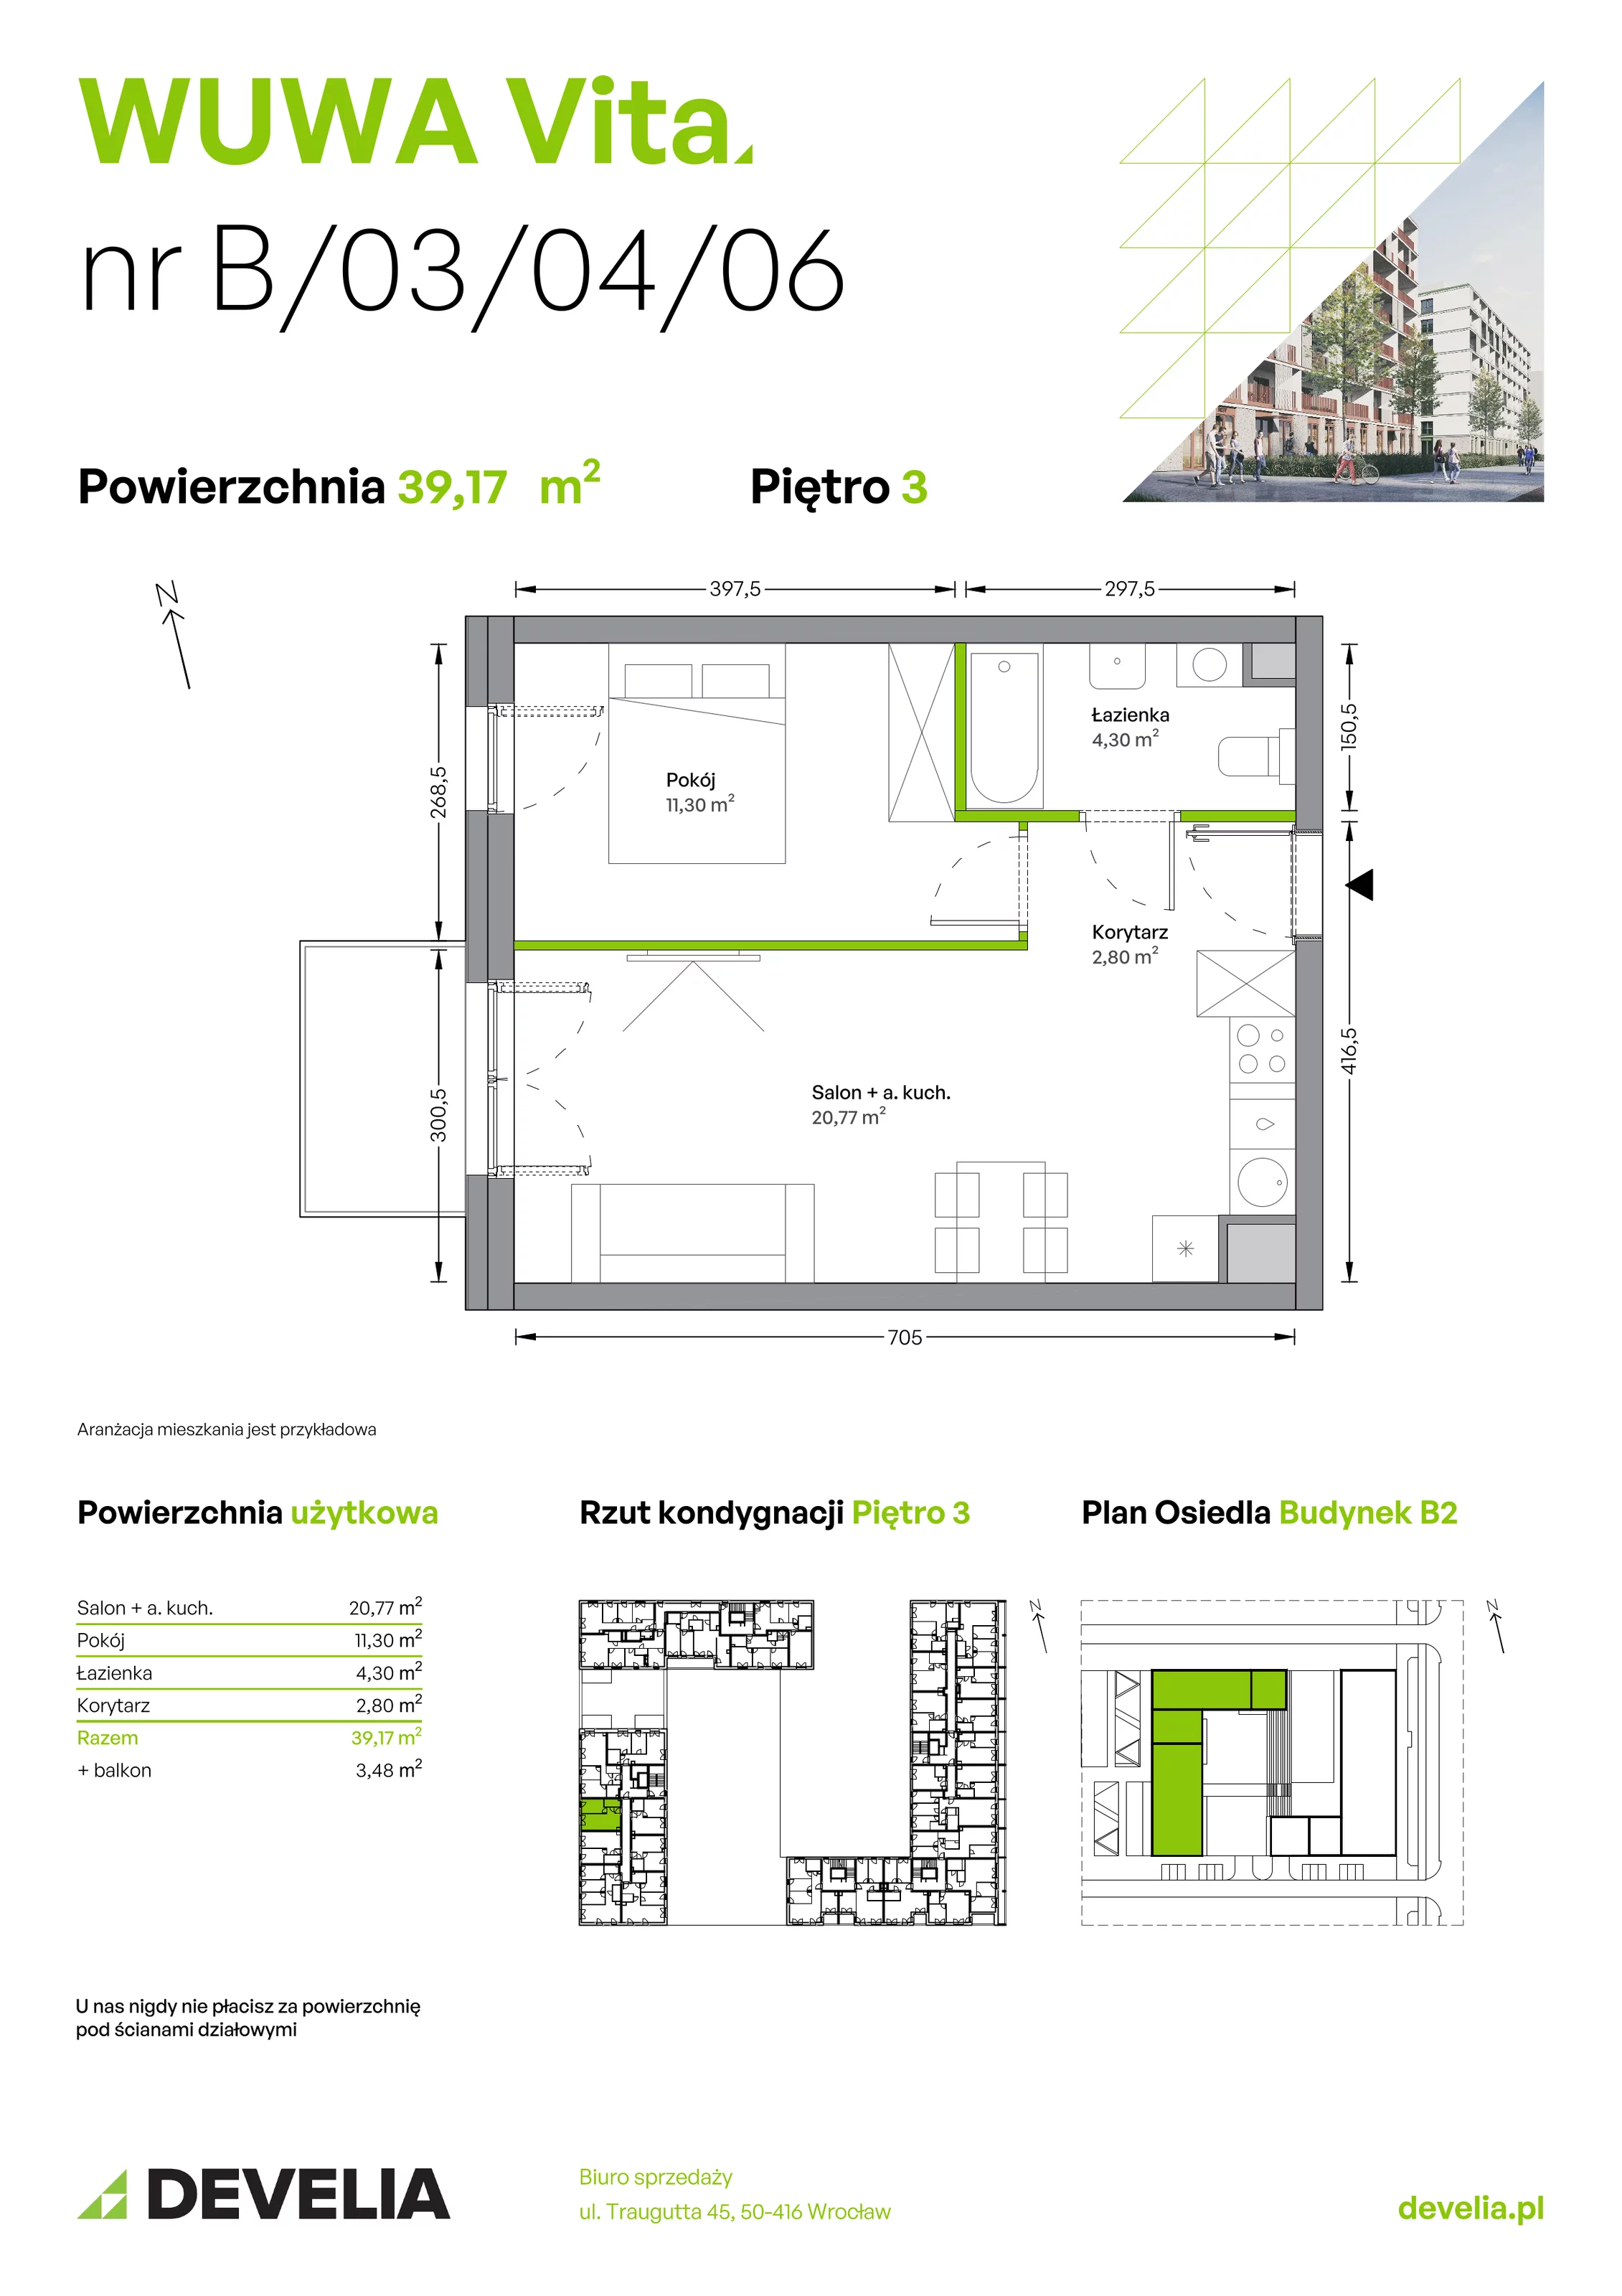 Mieszkanie 39,17 m², piętro 3, oferta nr B.03.04.06, WUWA Vita, Wrocław, Żerniki, Fabryczna, ul. Tadeusza Brzozy